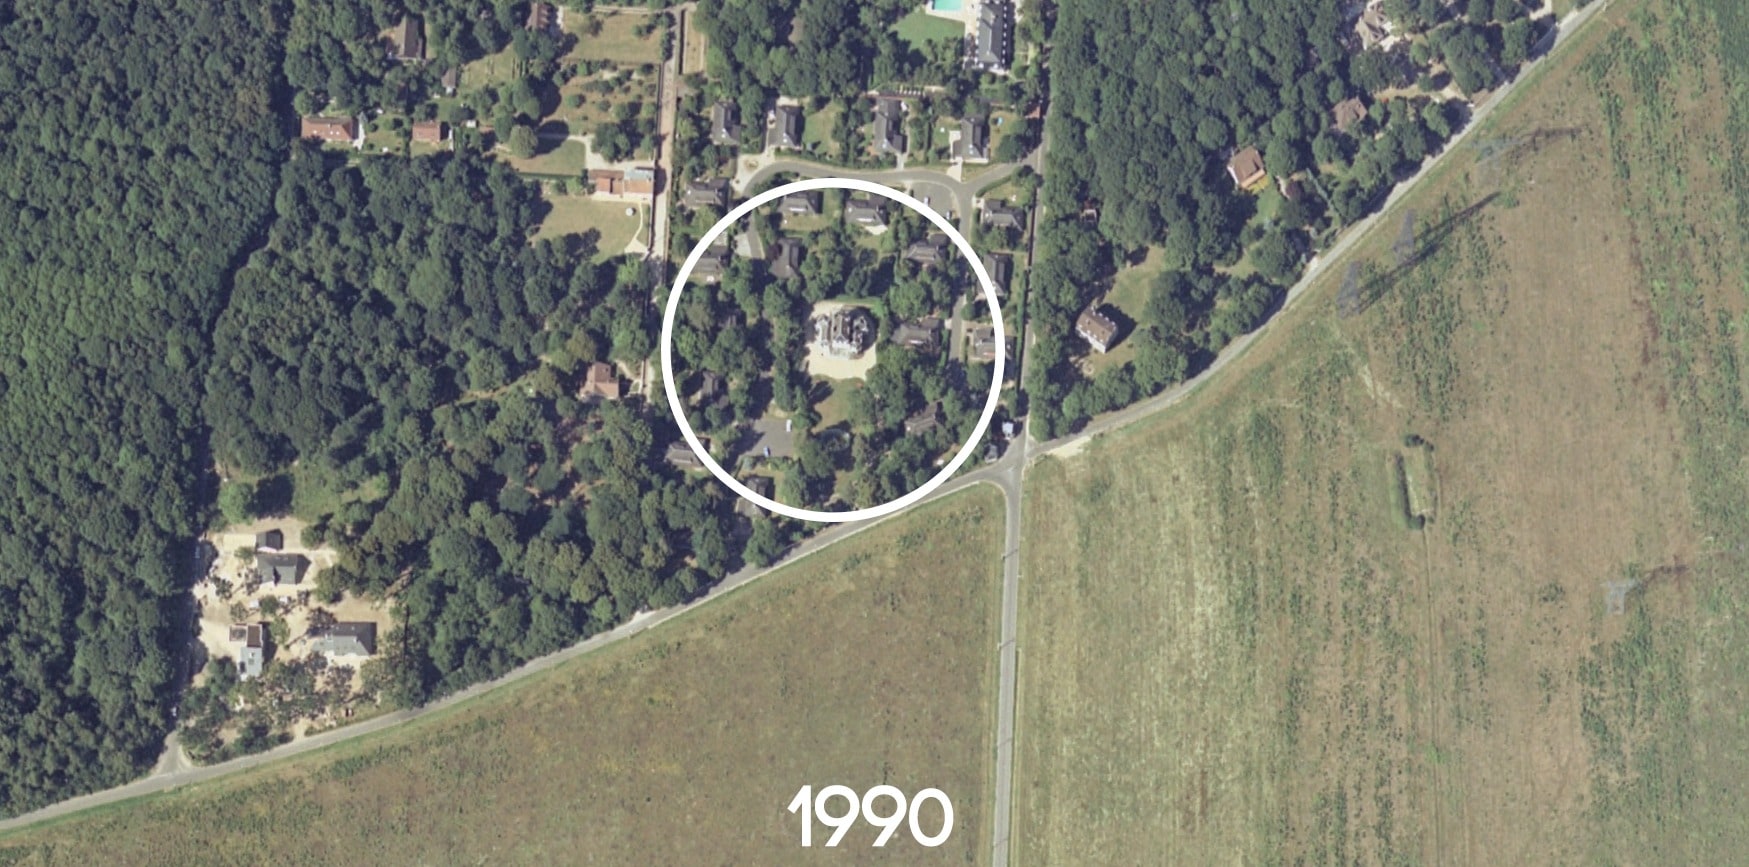 manoir-pavlovich-map1990